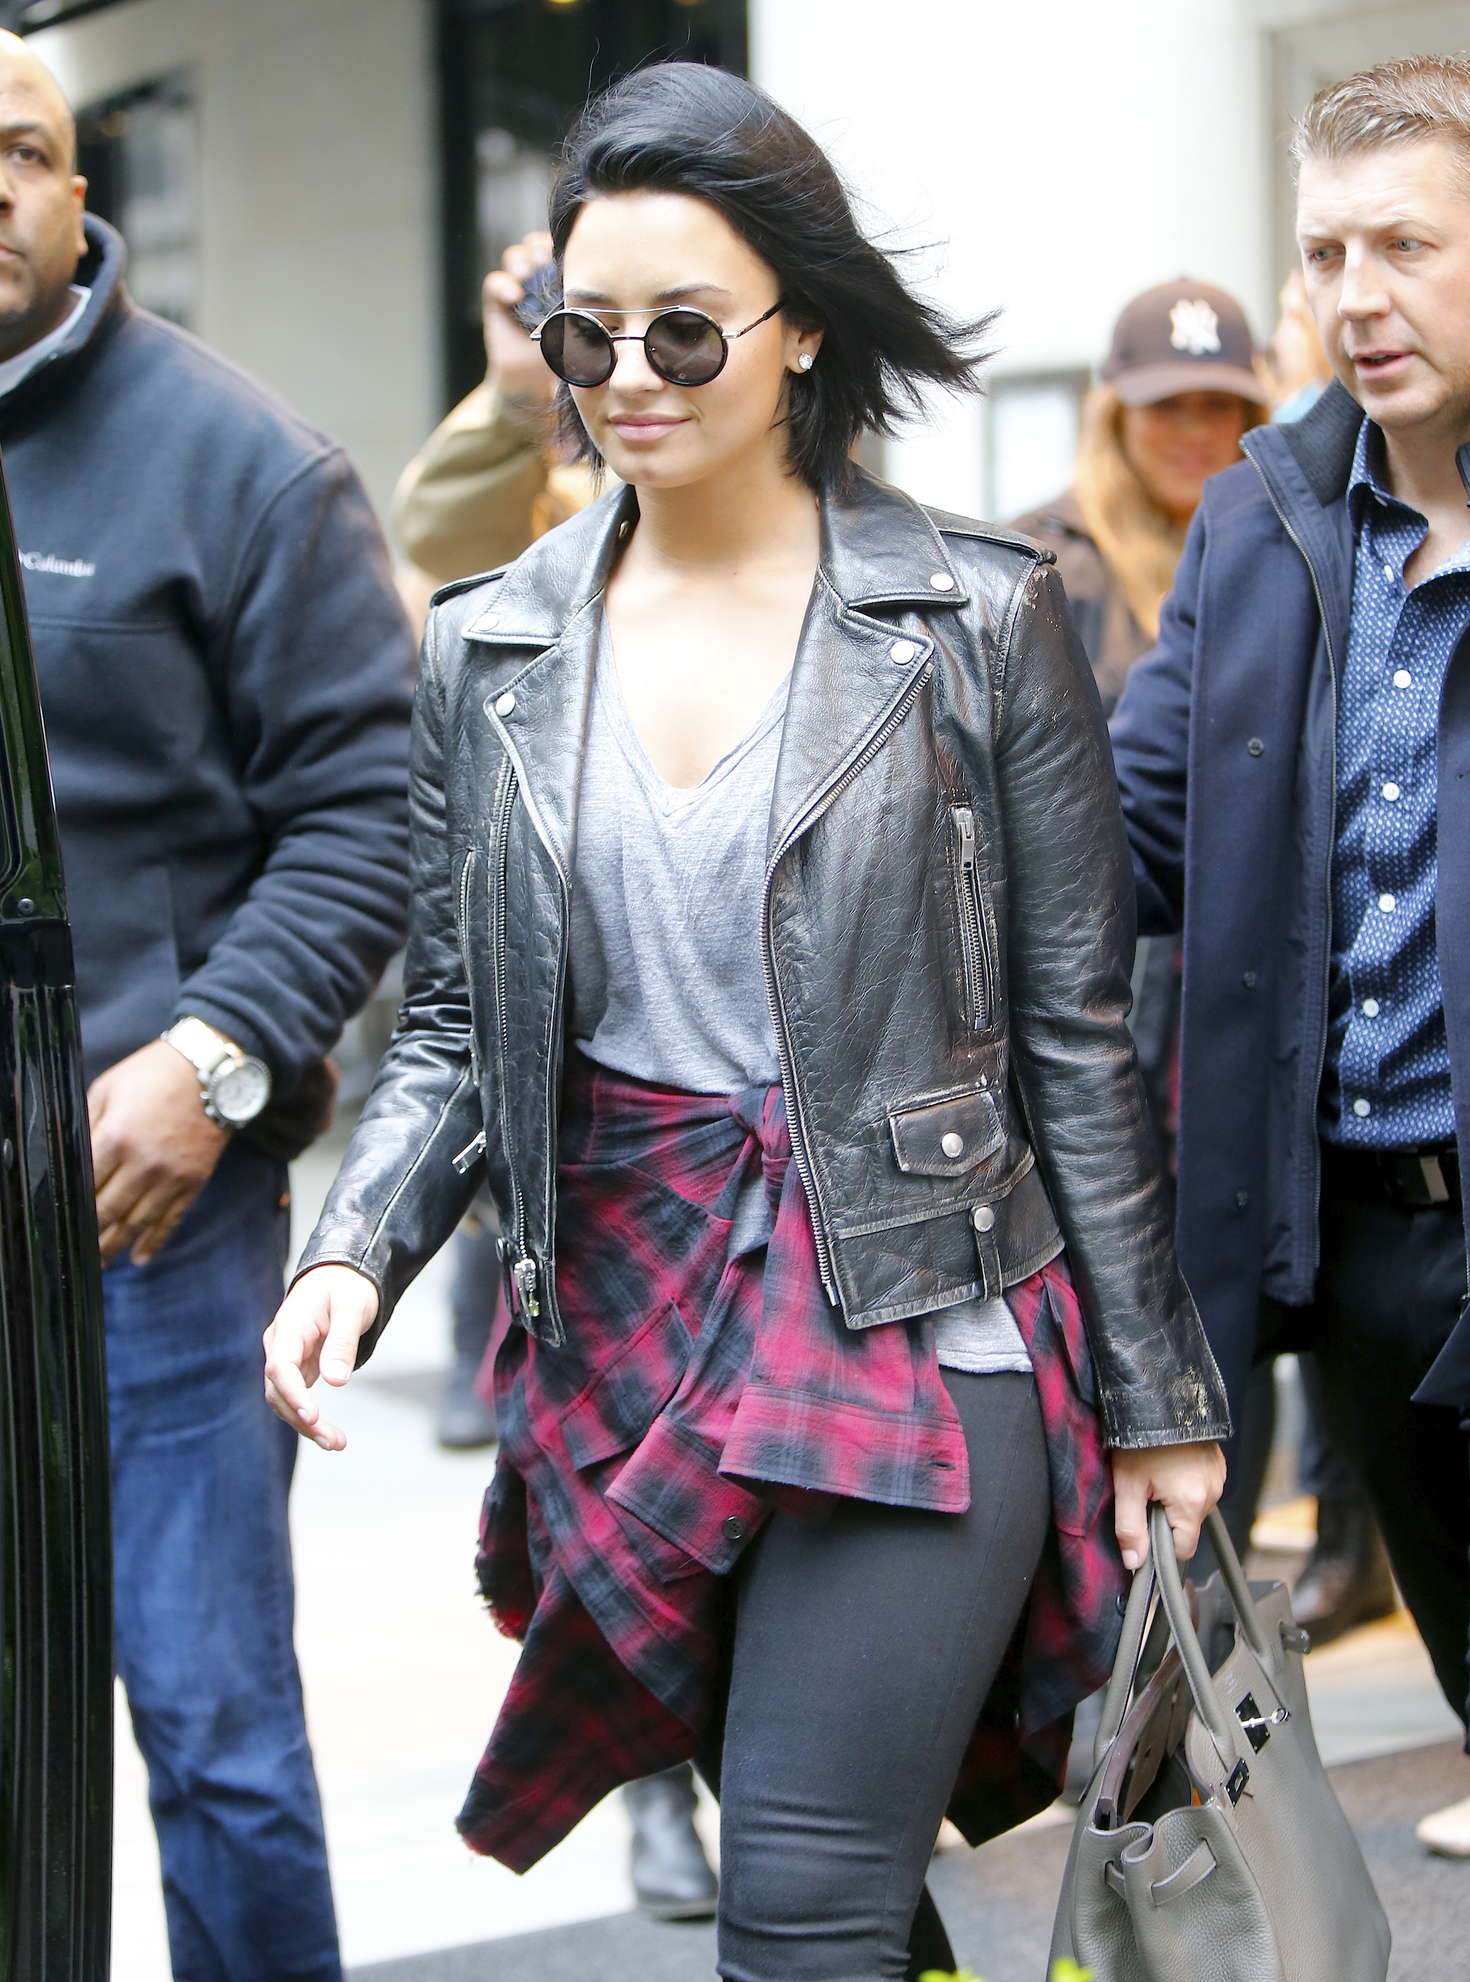 Demi Lovato leaving her hotel in New York